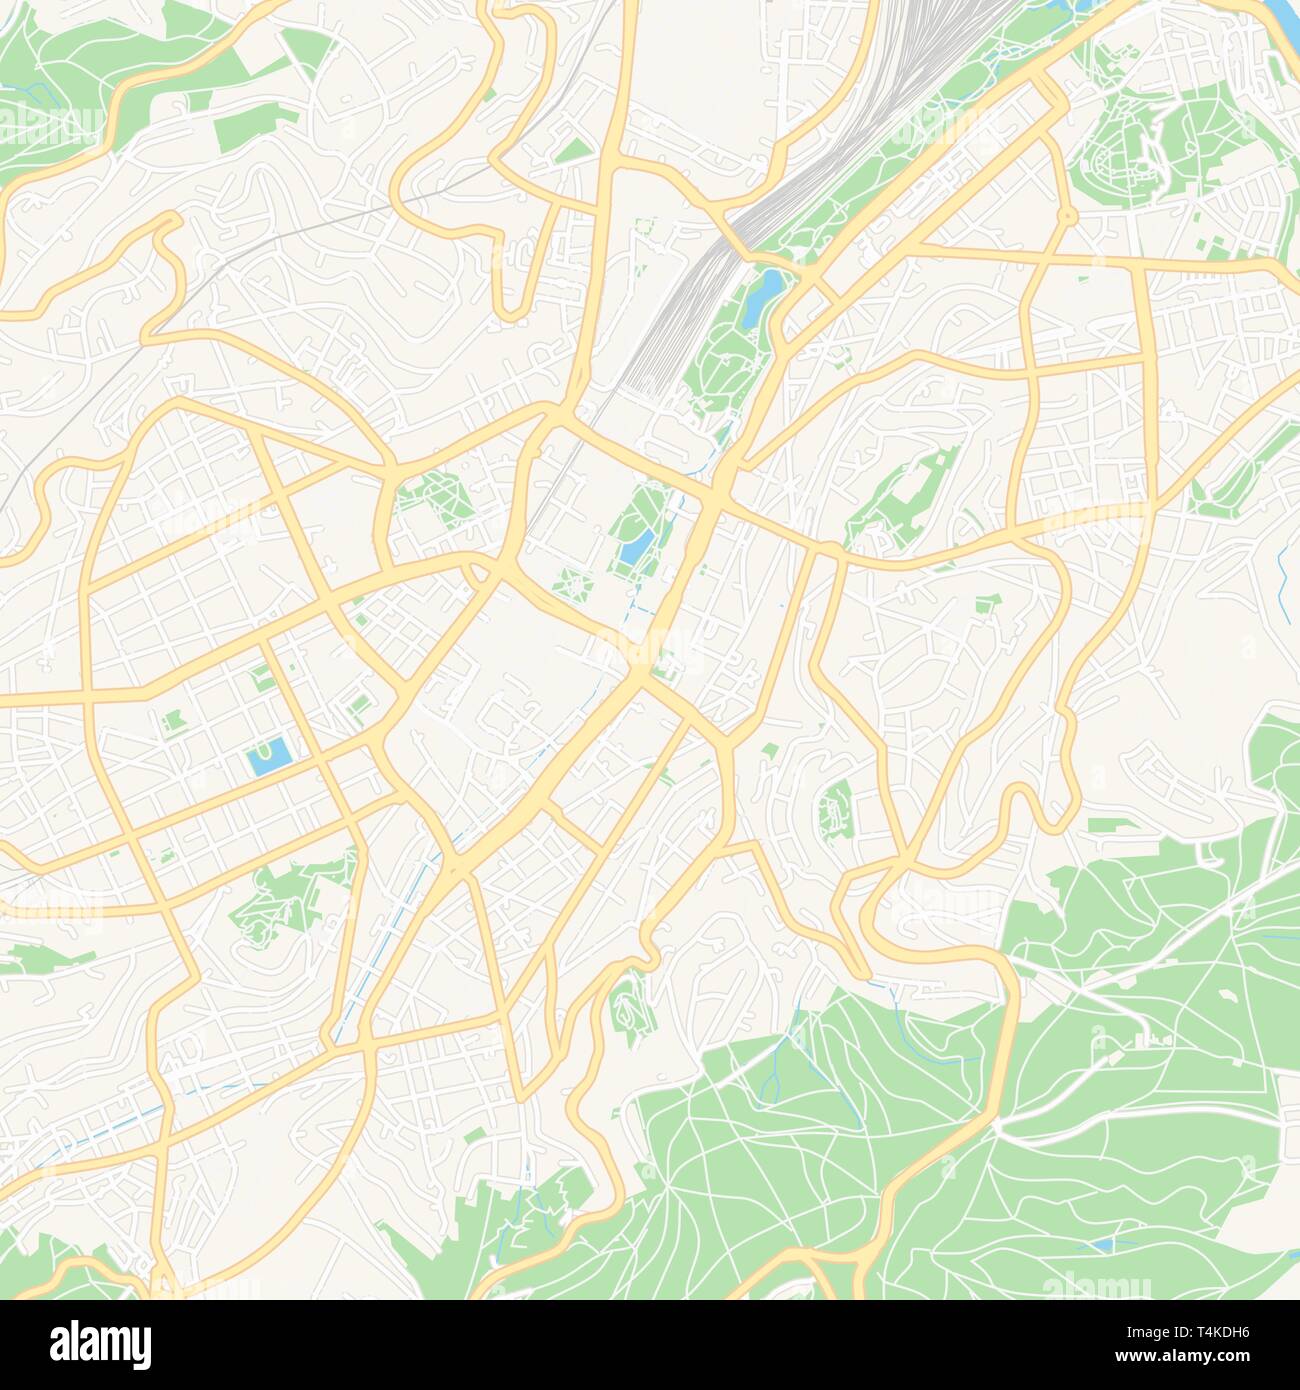 Mapa de Stuttgart, Alemania, con carreteras principales y secundarias y grandes ferrocarriles. Este mapa está cuidadosamente diseñado para el enrutamiento y la colocación de individu Ilustración del Vector